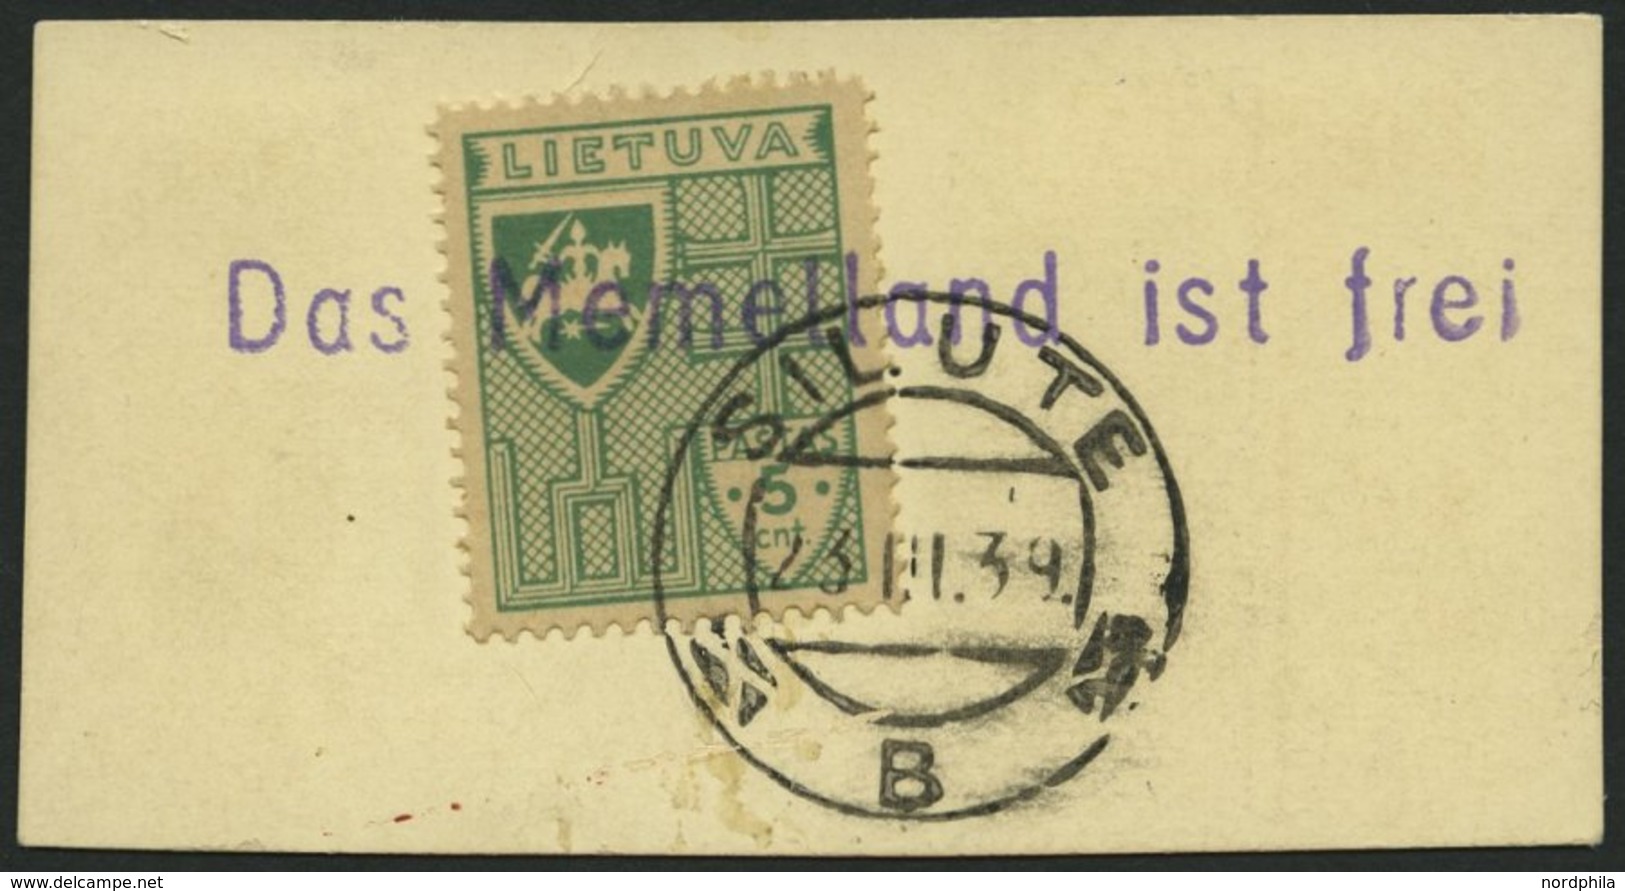 LITAUEN 409 BrfStk, 1939, 5 C. Grün Mit Stempel SILUTE Und Violettem L1 Das Memelland Ist Frei, Prachtbriefstück - Lituanie